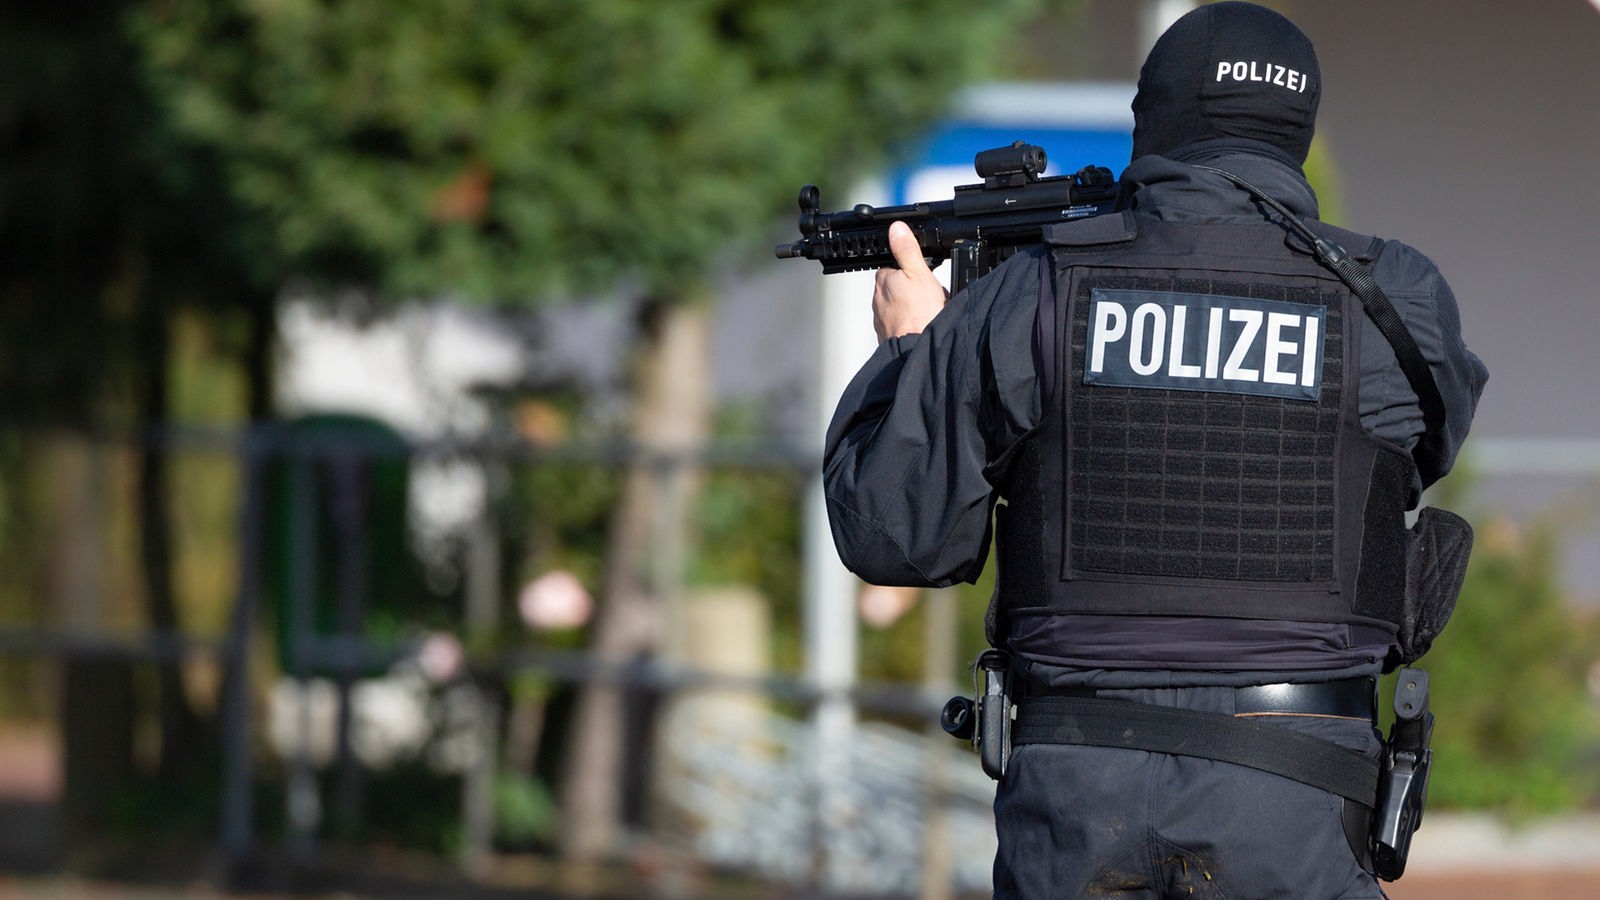 Schießen als letzte Möglichkeit für Polizisten? - Nachrichten - WDR